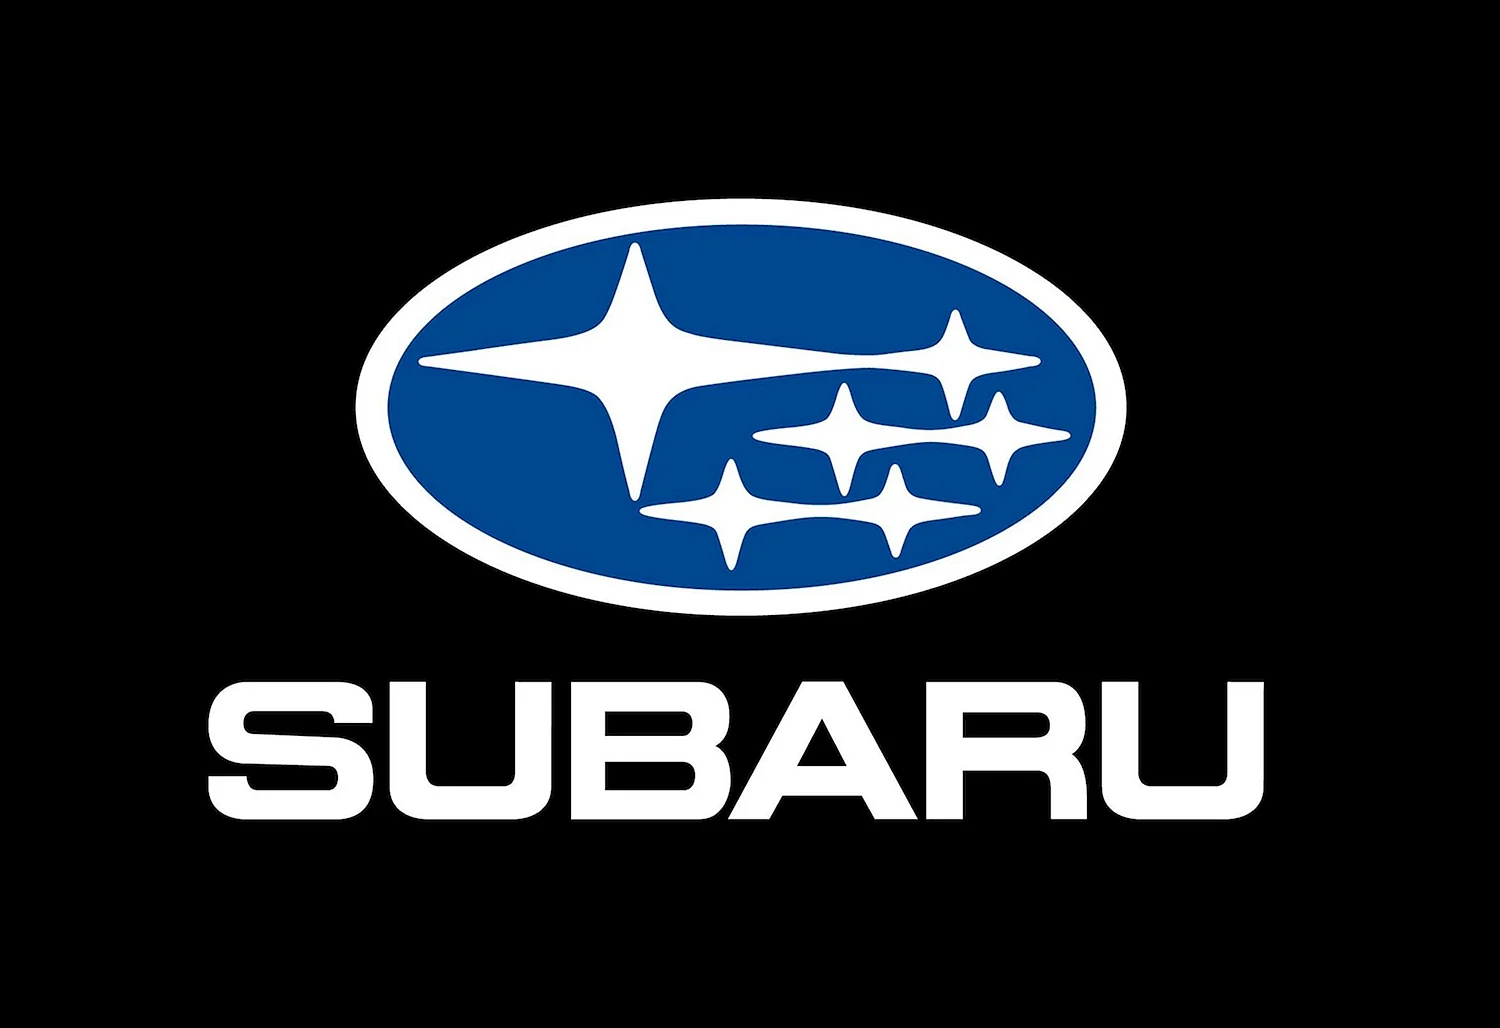 Субару лого